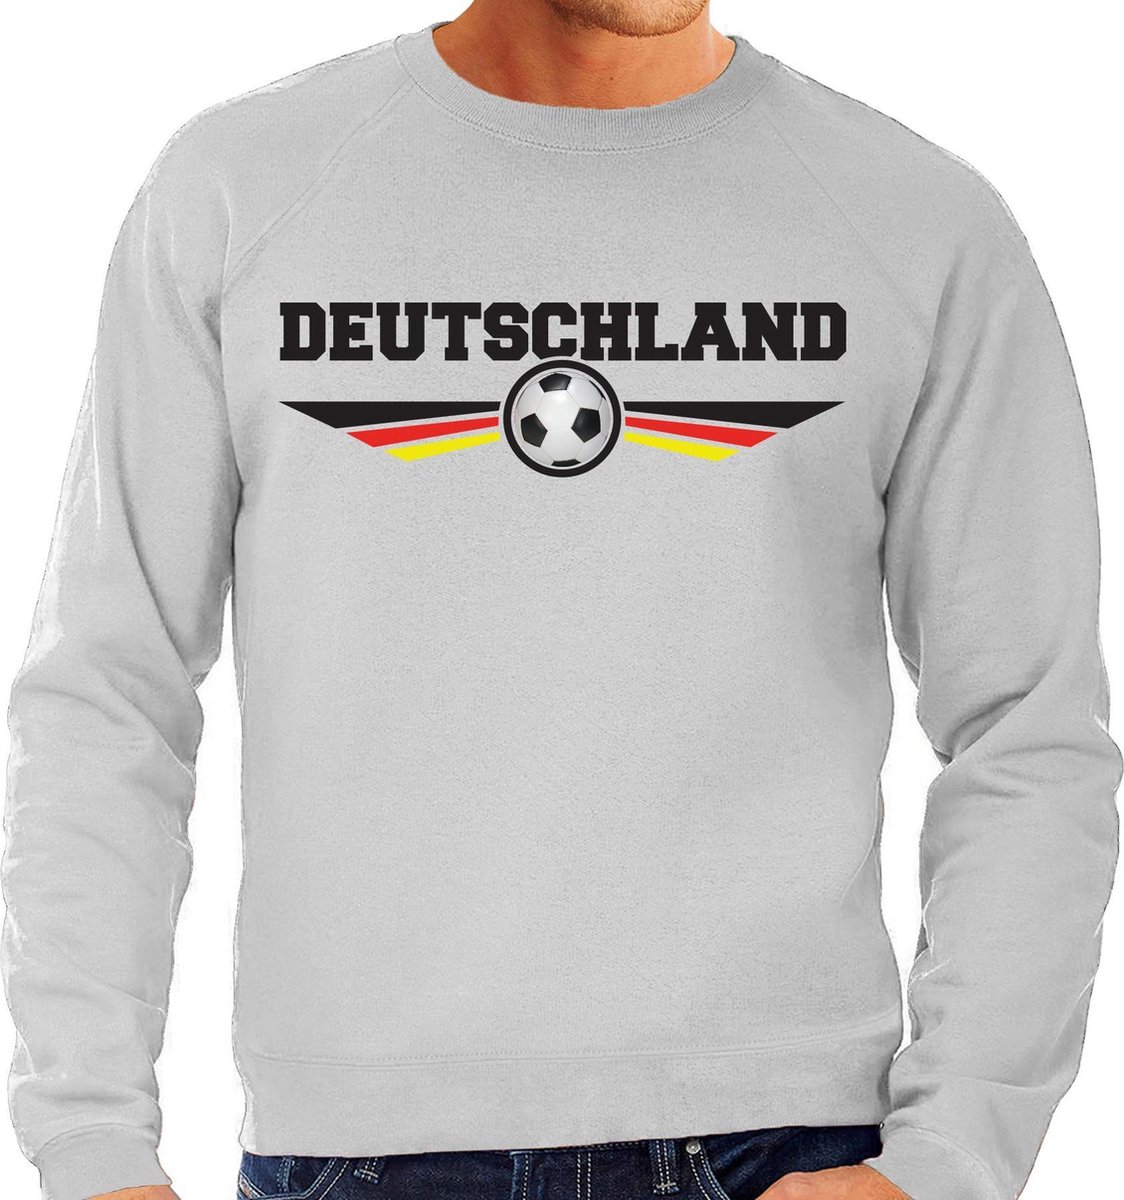 Afbeelding van product Bellatio Decorations  Duitsland / Deutschland landen / voetbal sweater met wapen in de kleuren van de Duitse vlag - grijs - heren - Duitsland landen trui / kleding - EK / WK / voetbal sweater M  - maa